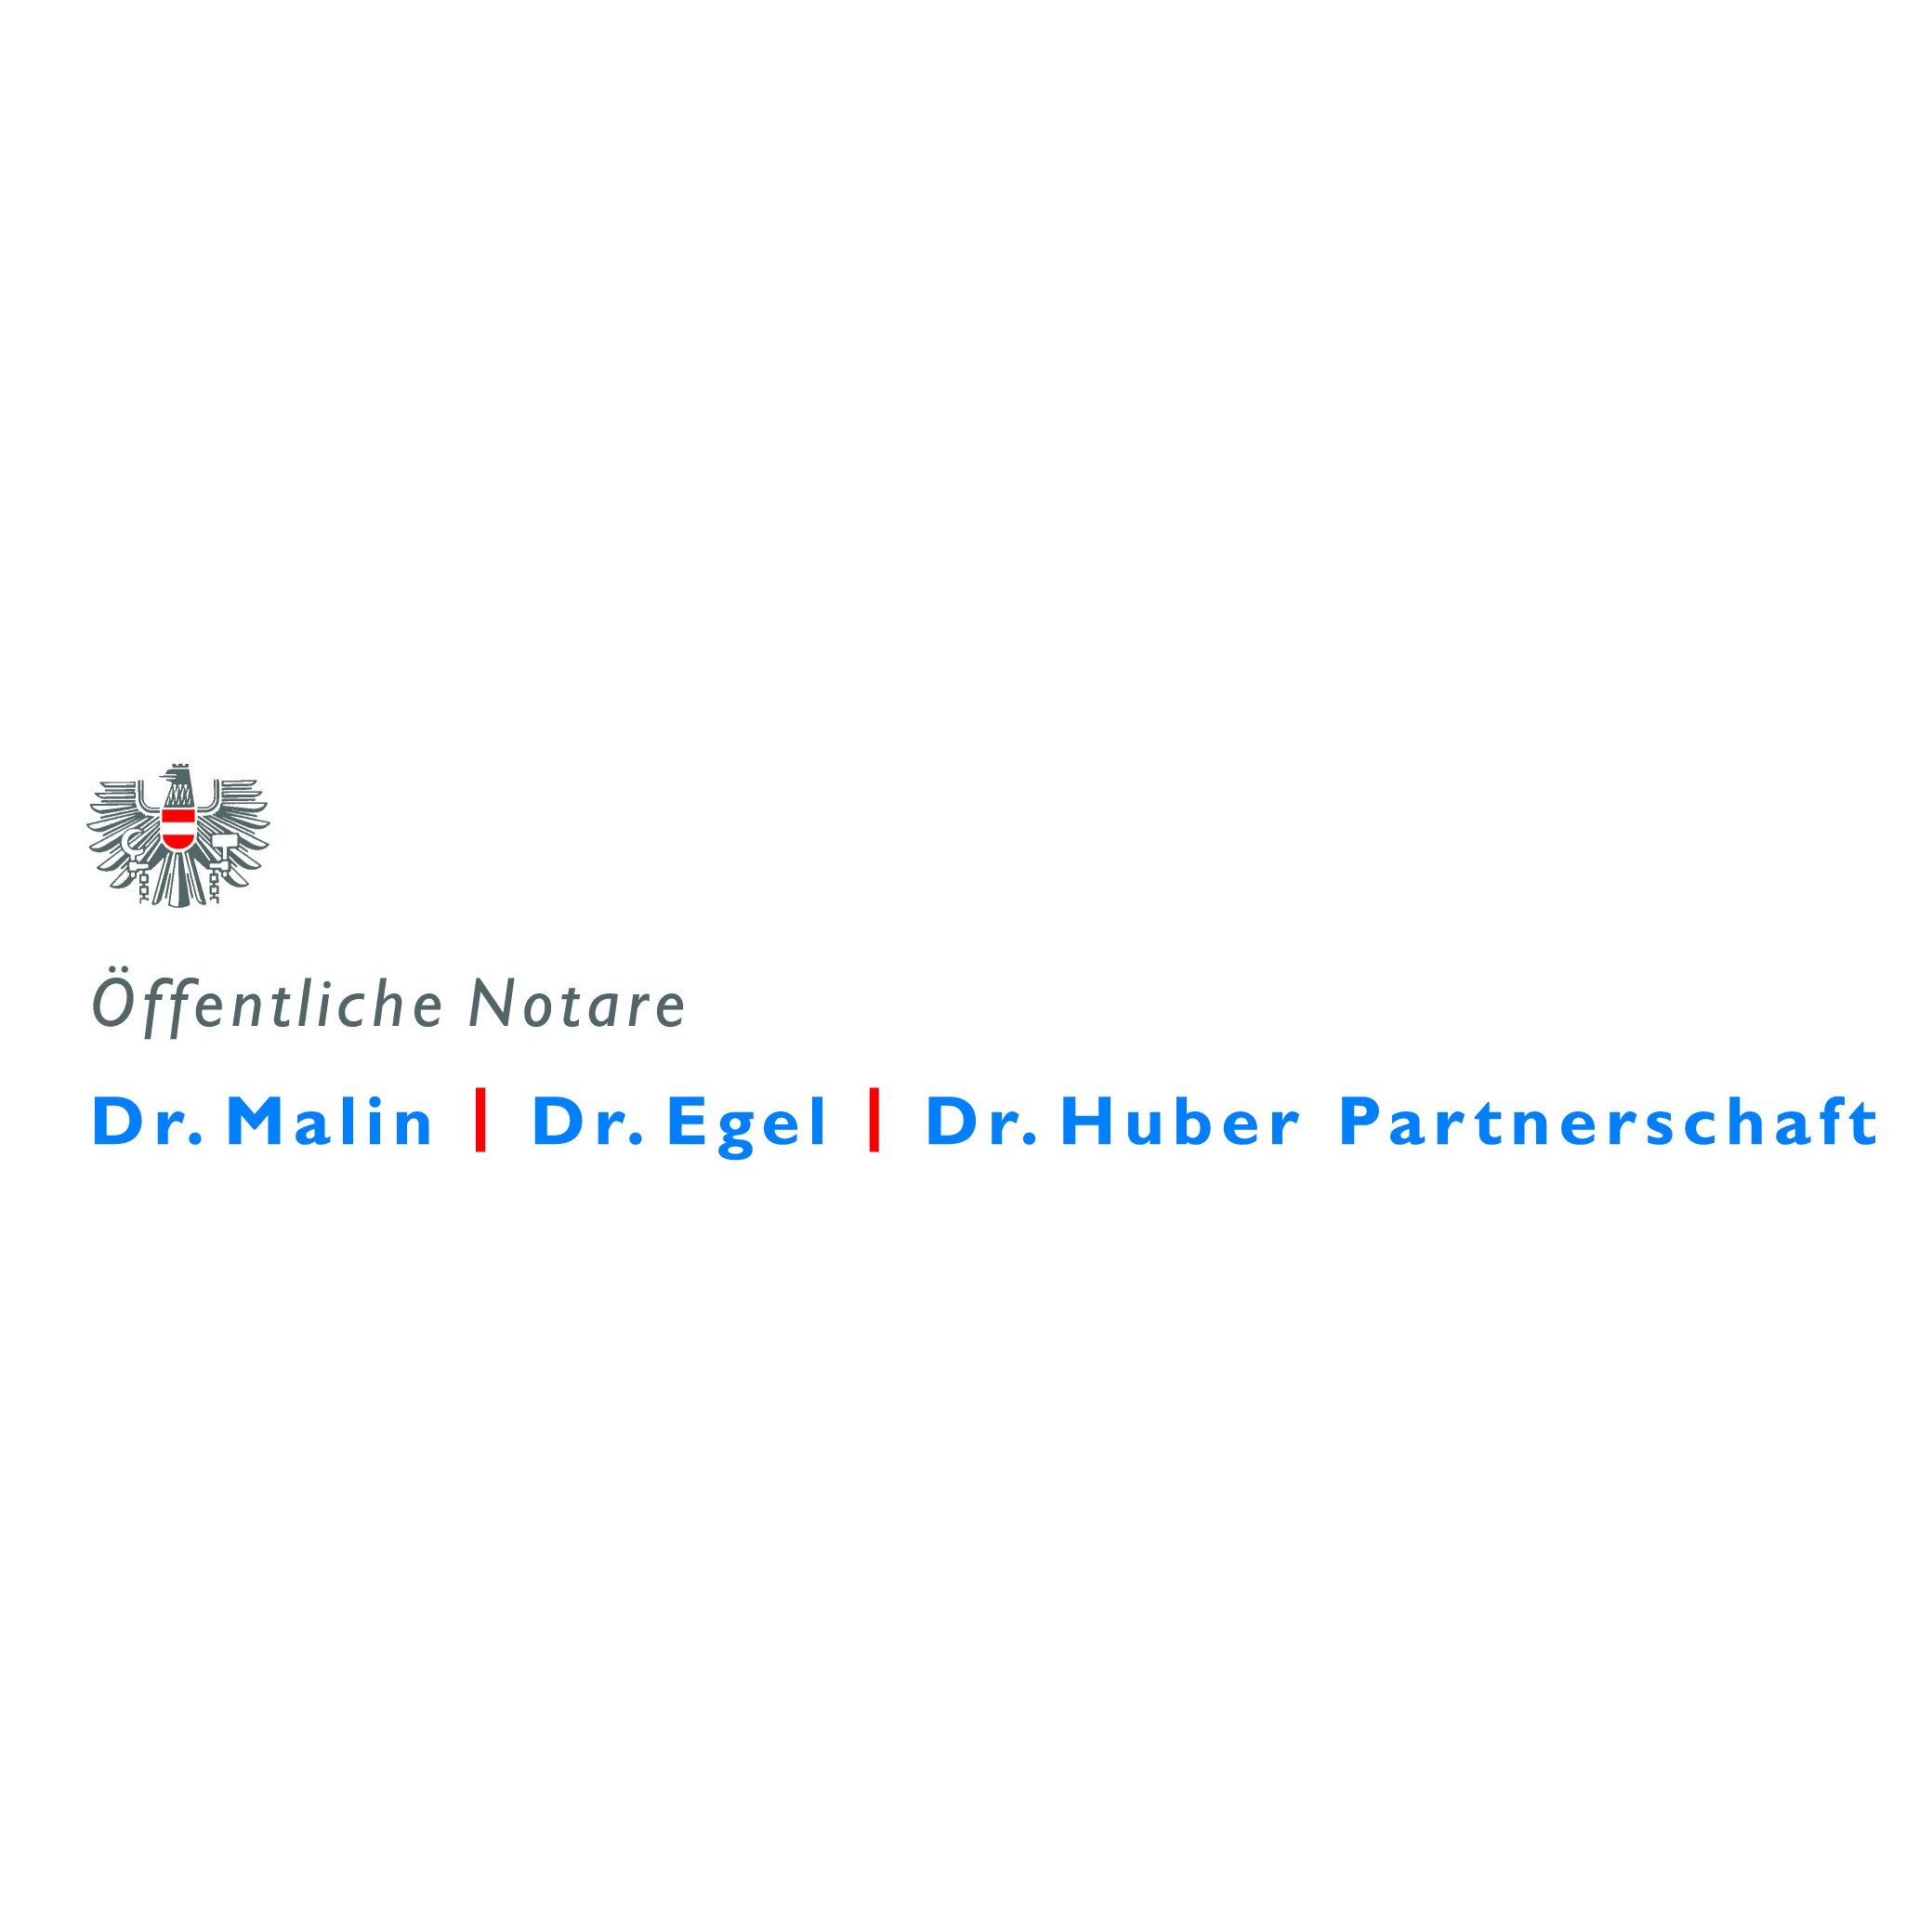 Öffentliche Notare Dr. Malin | Dr. Egel | Dr. Huber Partnerschaft